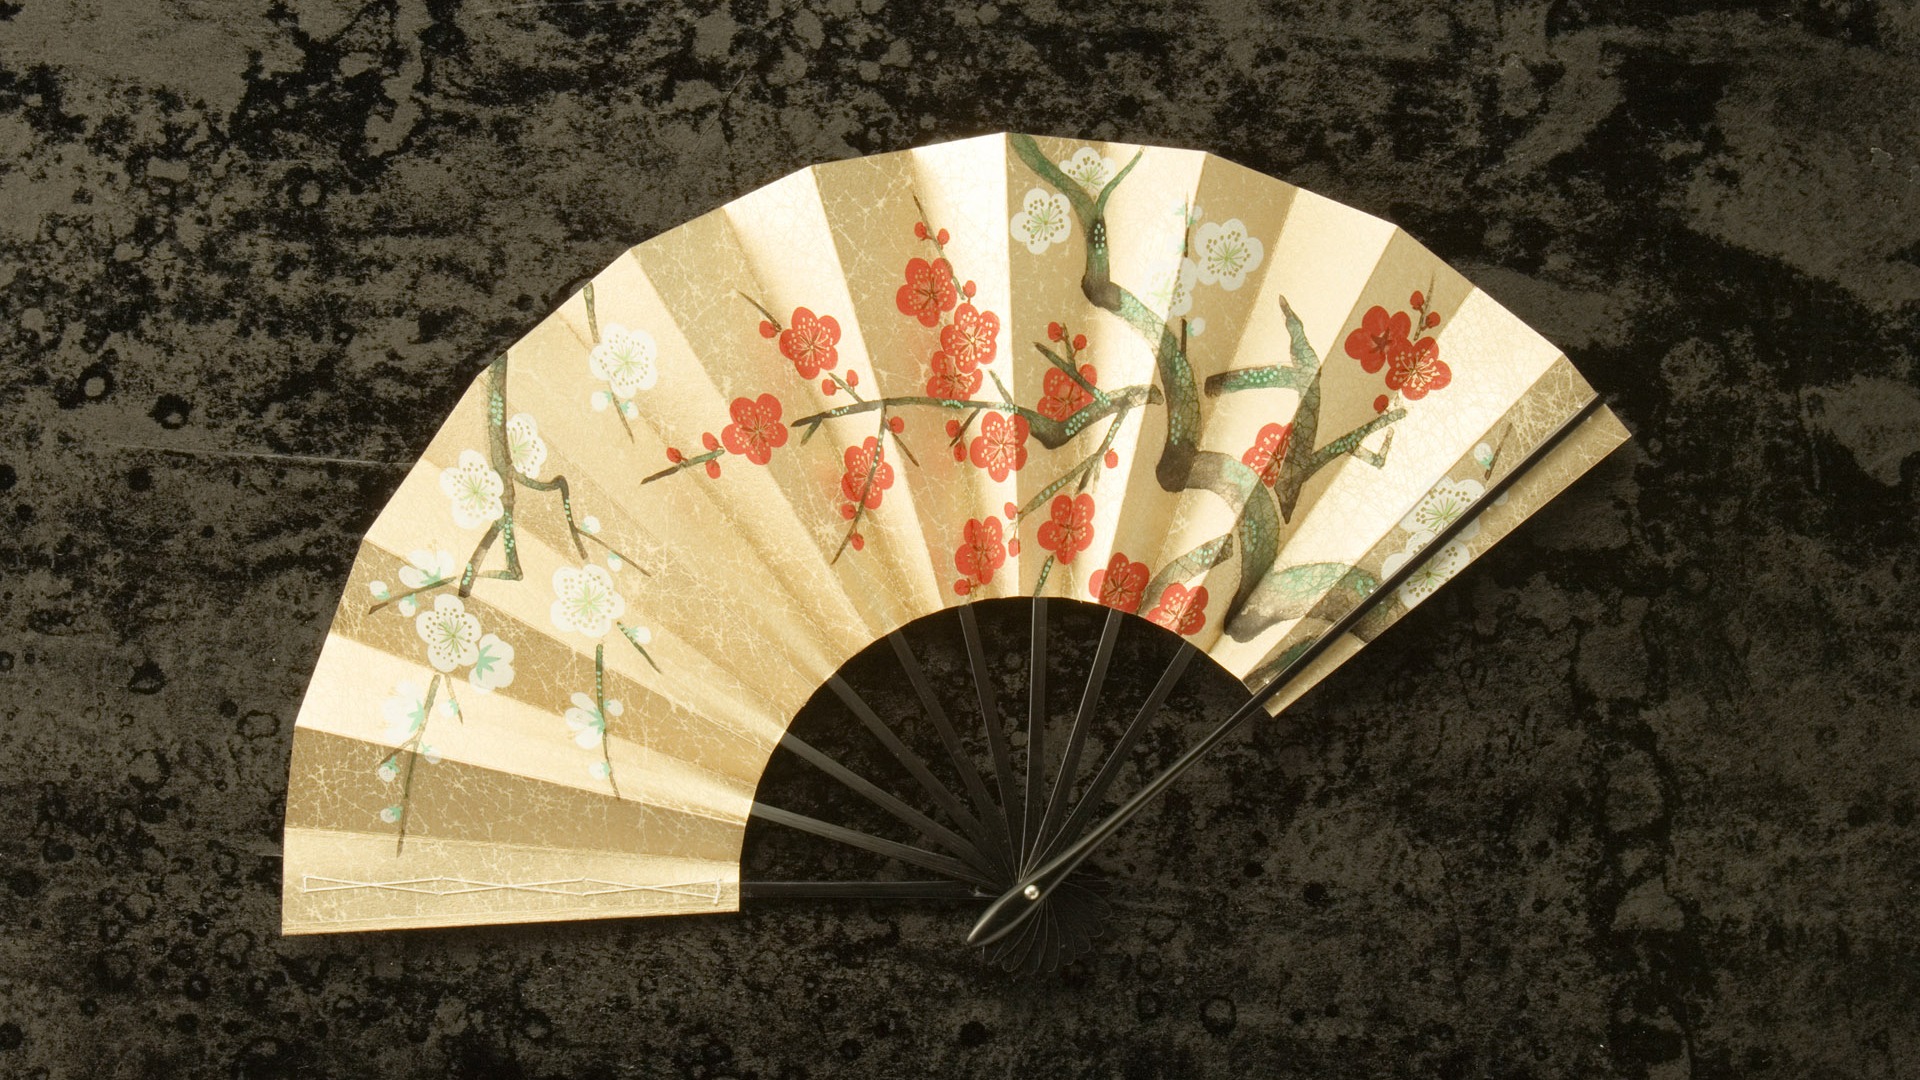 Fondos de año nuevo japonés Cultura (3) #3 - 1920x1080